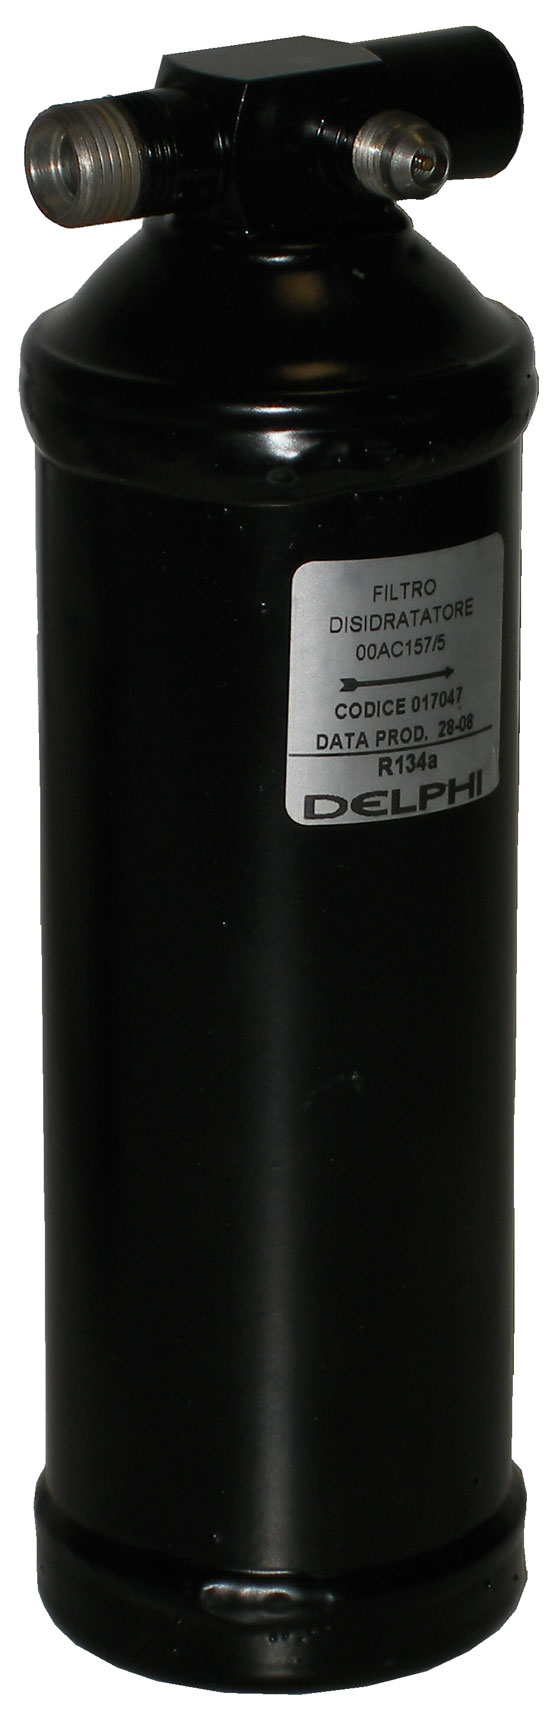 Filtertrockner R134a M-F D64 H211 3/64